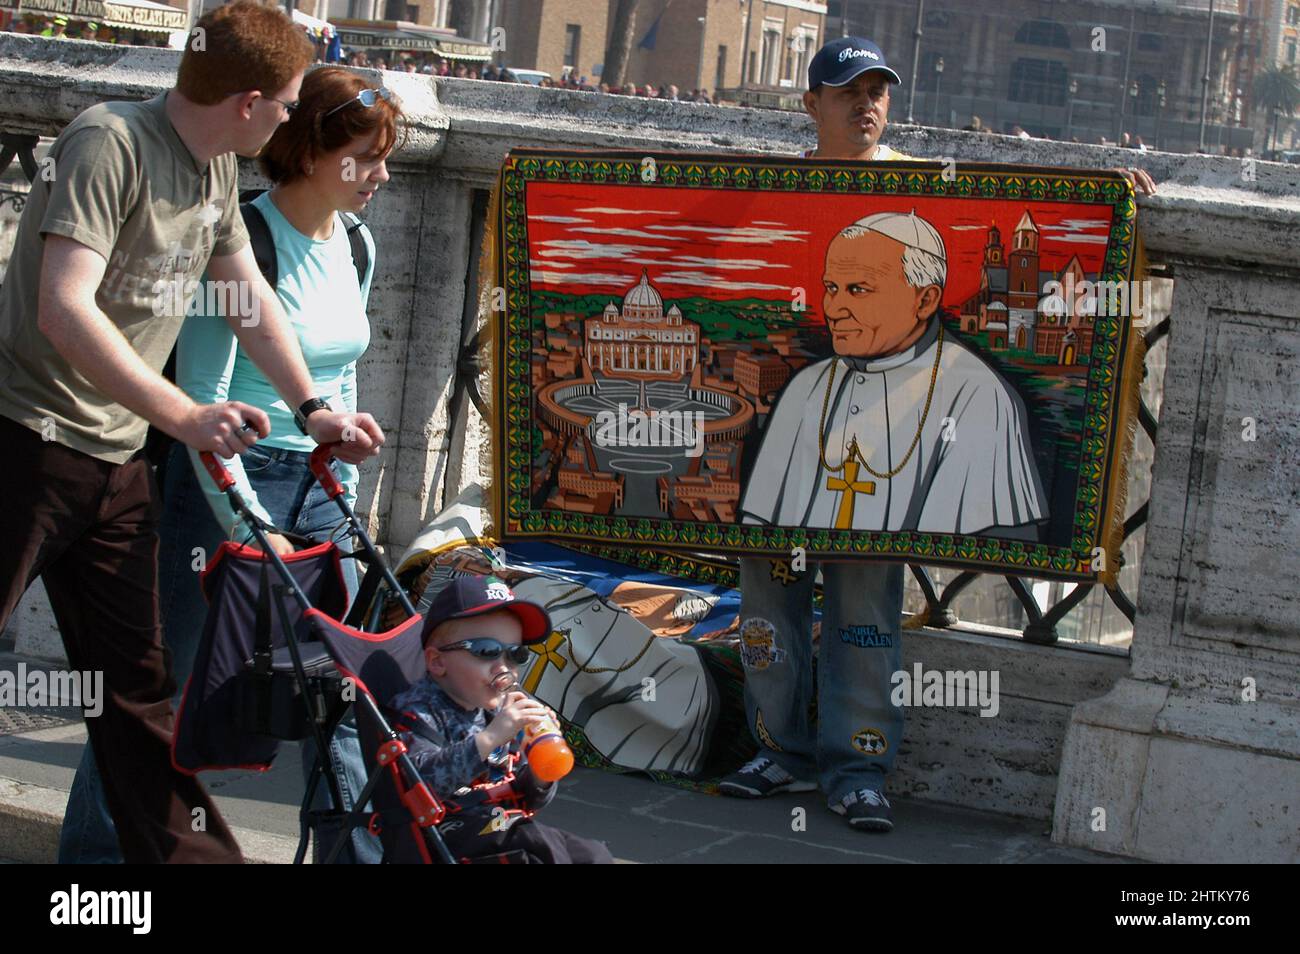 Rome, Italie 06/04/2005: Un vendeur de rue vend un tissu avec l'image du Pape Wojtyla. ©Andrea Sabbadini Banque D'Images